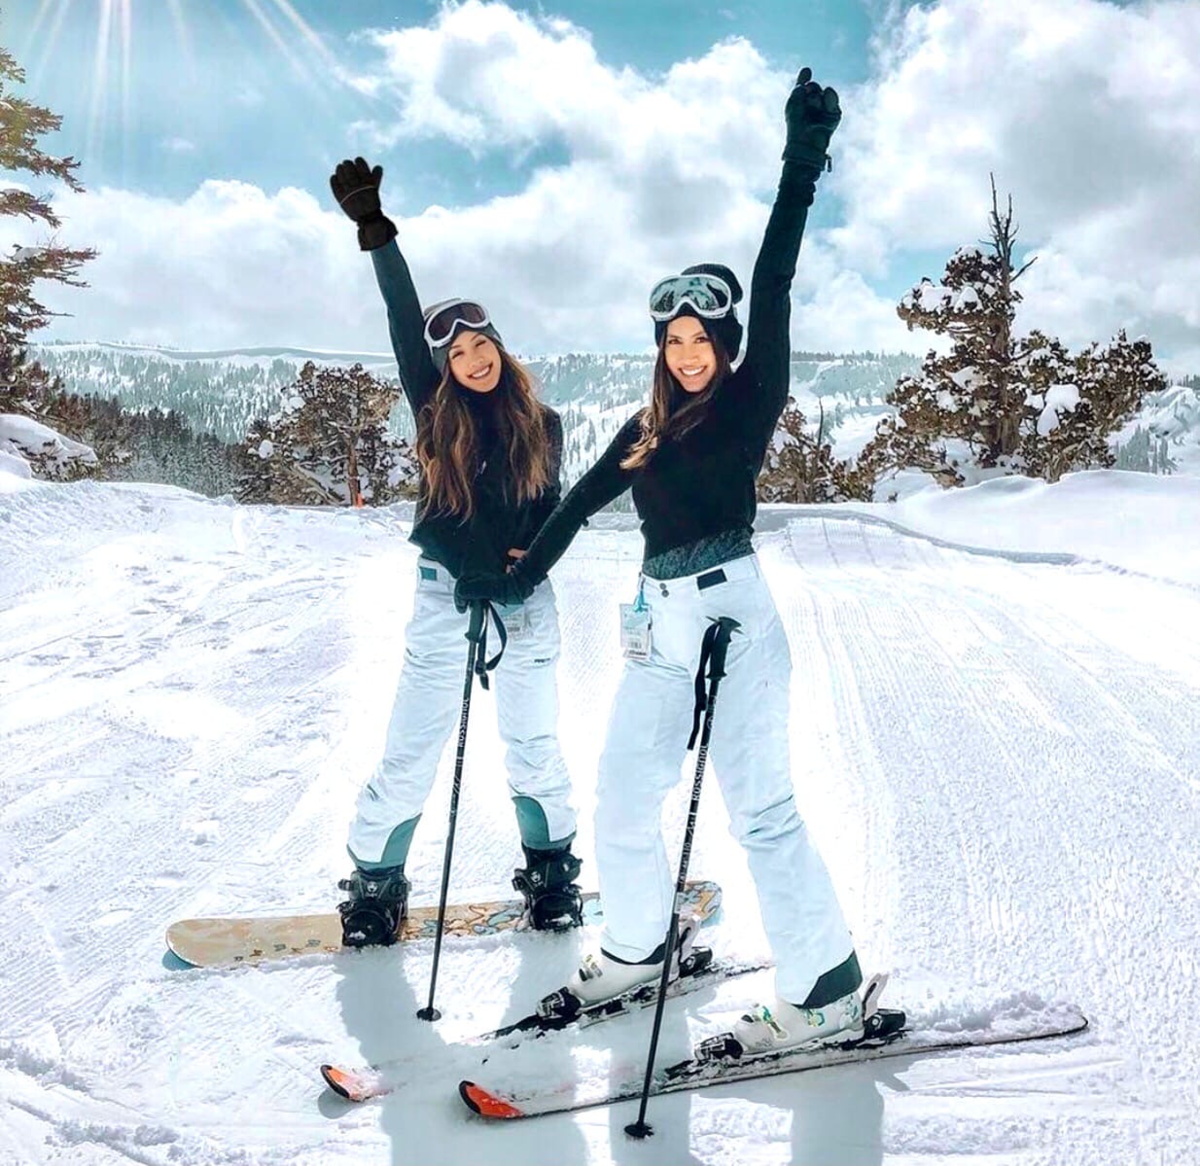 Катание на горнолыжных лыжах. Катание на горных лыжах. Девушка на лыжах. Покататься на лыжах. Лыжи зимой.